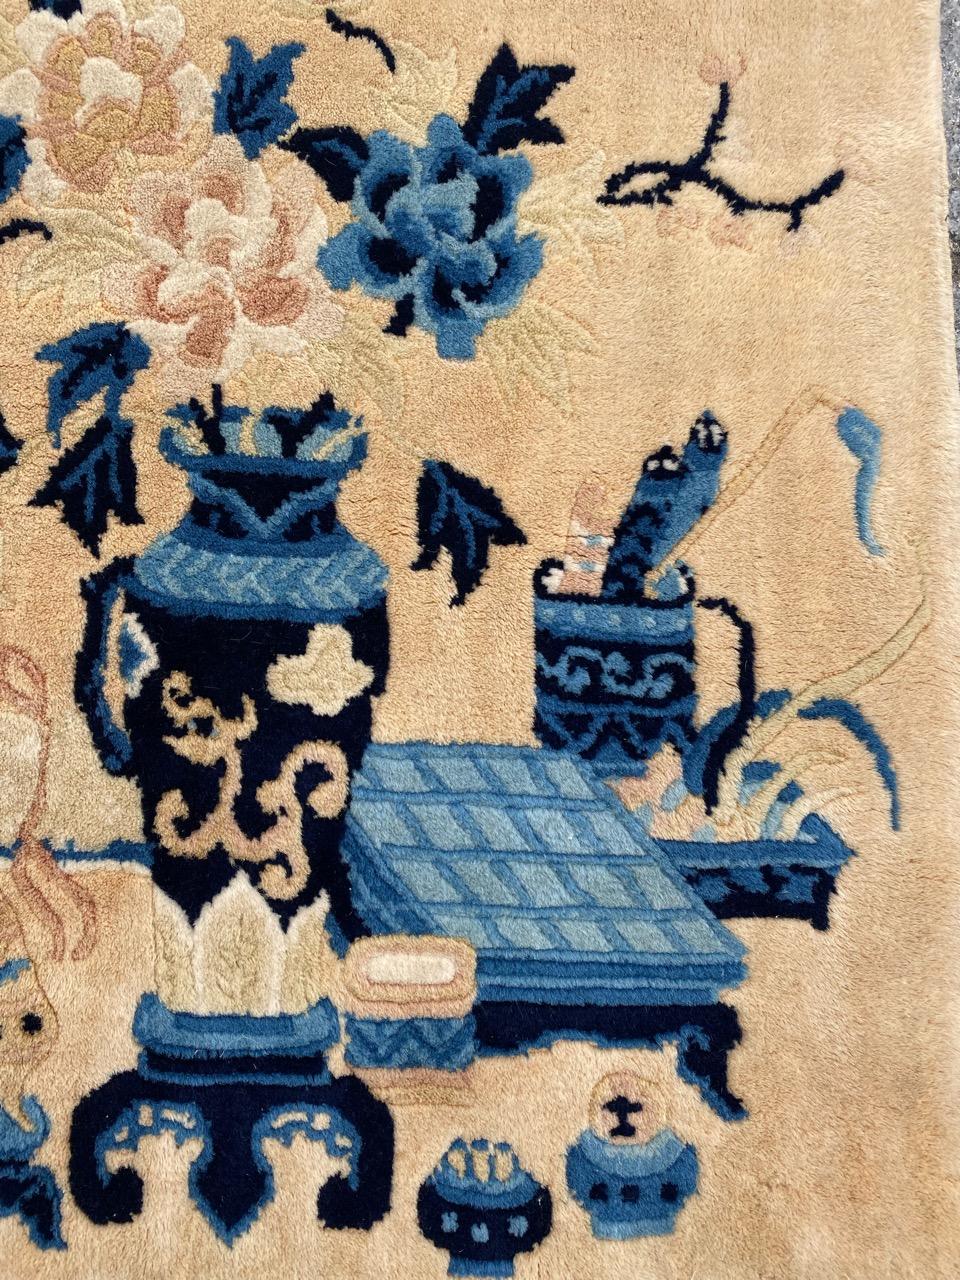 Exquisiter chinesischer Teppich aus Peking mit einem fesselnden Design und leuchtenden Farben. Sorgfältig handgeknüpft mit Wollsamt auf Baumwollbasis. Das komplizierte Muster mit Blumenvasen, Hockern, Tischen und Regalen fängt die Essenz eines